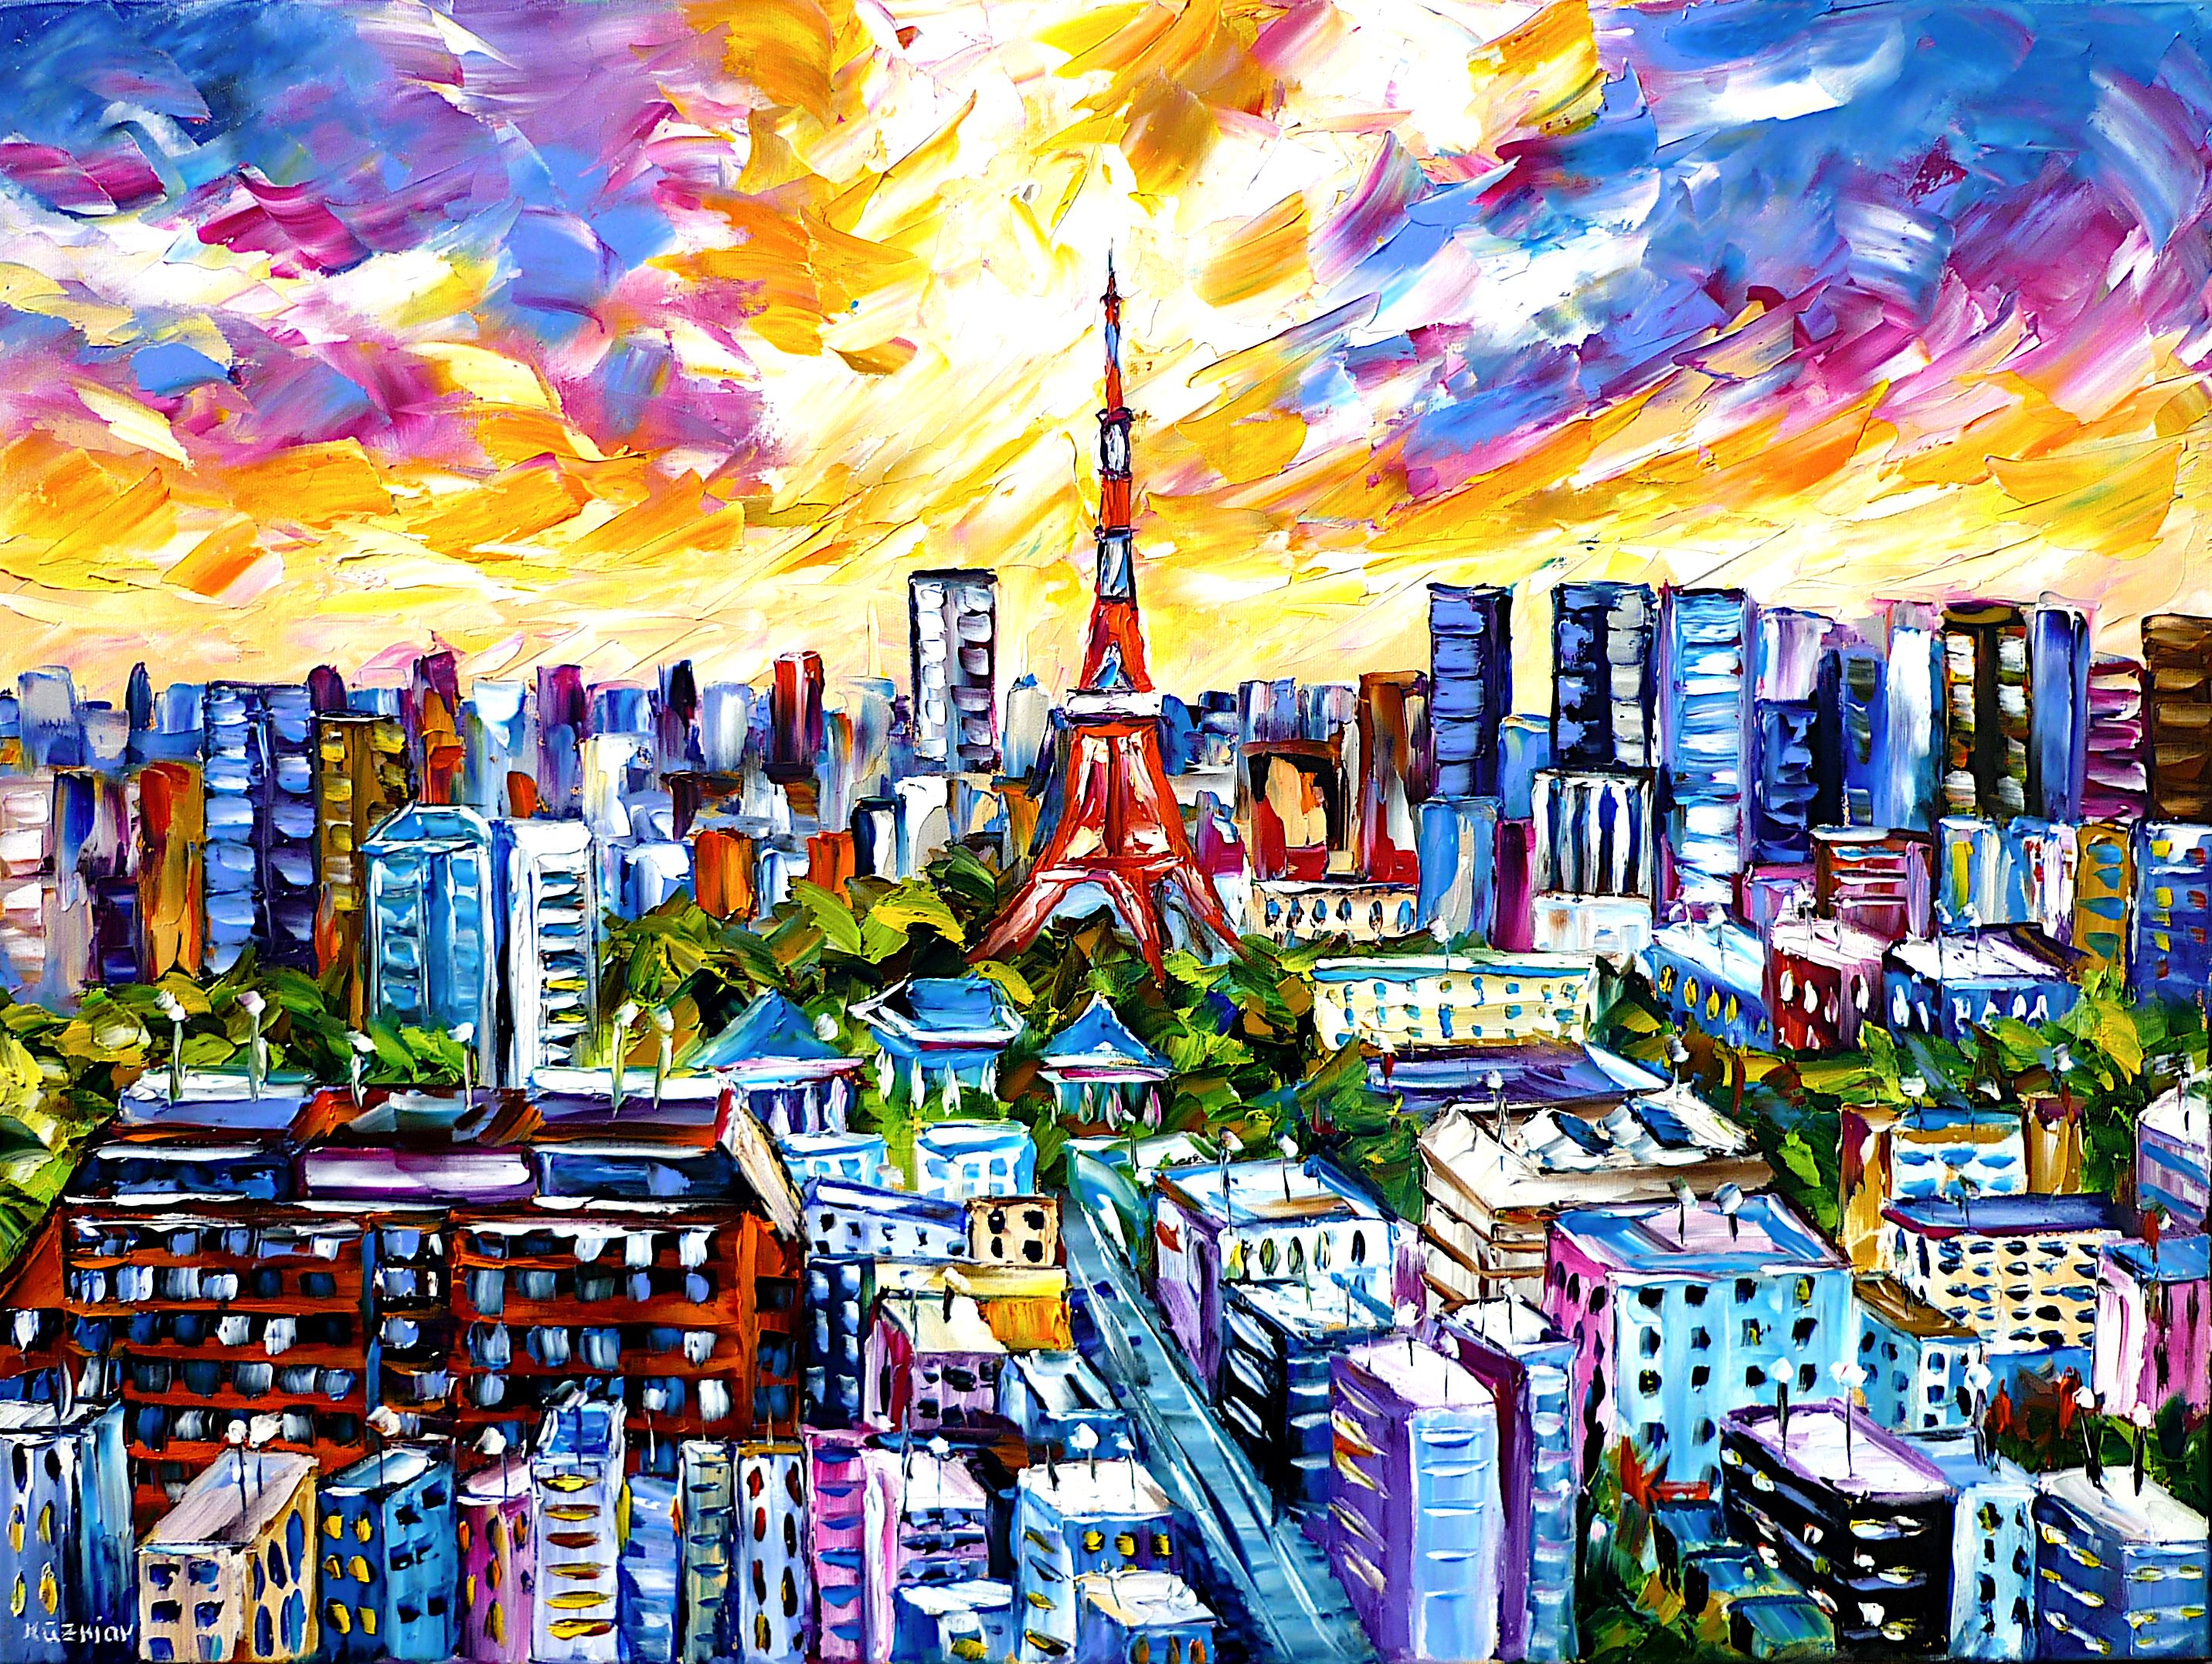 tokio skyline,tokio von oben,tokyo tower,tokio stadtbild,die häuser von tokio,tokio hochhäuser,tokio farbenfroh,tokio abstrakt,tokio stadtlandschaft,abstrakter himmel,tokio gemälde,tokio bild,tokio Fernsehturm,tokio liebe,tokio liebhaber,ich liebe tokio,japan,himmel über der stadt,tokio stadt,Spachtel Ölgemälde,ölmalerei,spachtelmalerei,spachteltechnik,moderne Kunst,moderne malerei,modern,Impressionismus,expressionismus,abstrakte Malerei,lebendige Farben,bunte Malerei,helle Farben,Lichtreflexe,impasto Malerei,figurativ